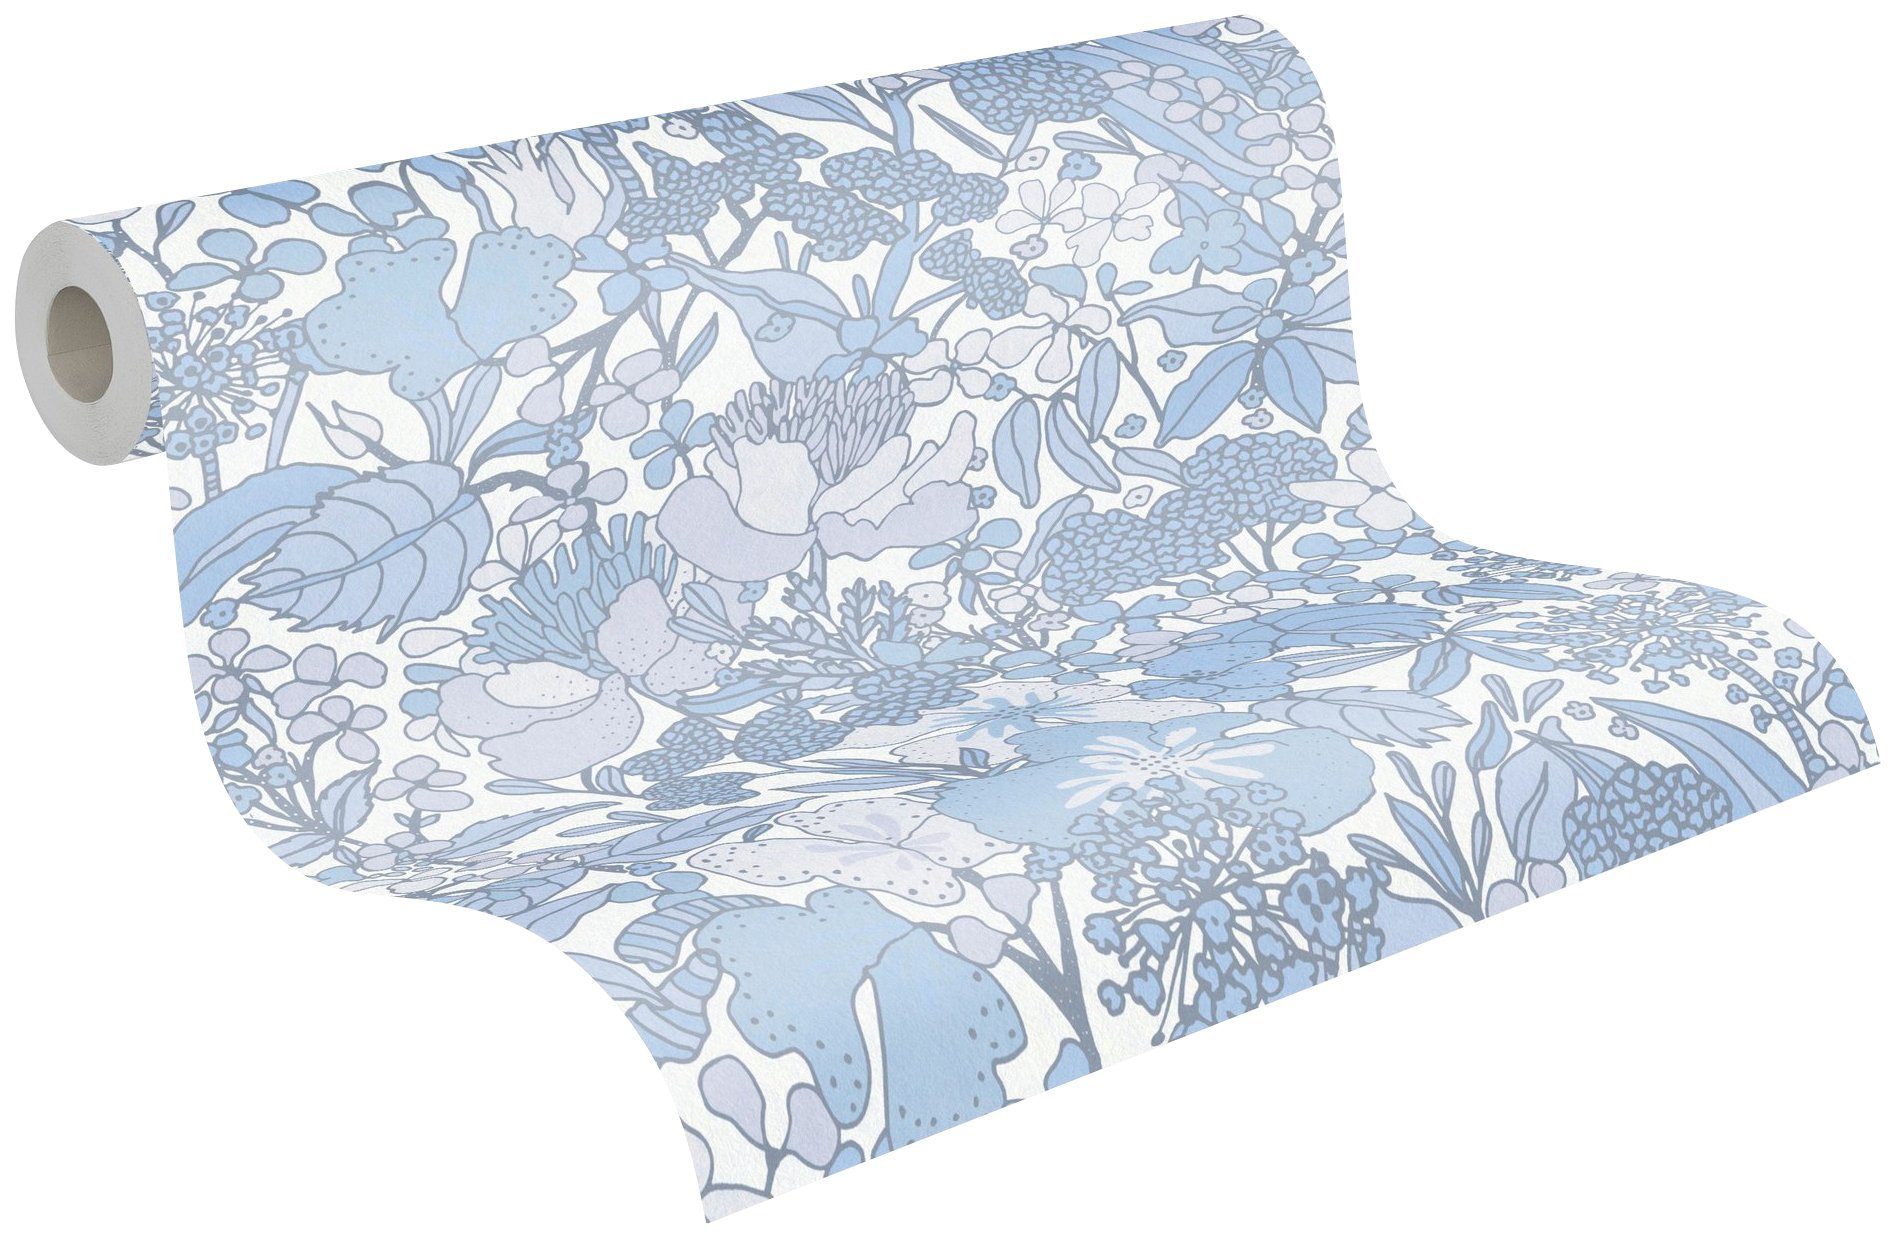 Architects Paper Vliestapete Impression, botanisch, grau/blau/weiß Dschungel glatt, Tapete Floral floral, Blumentapete